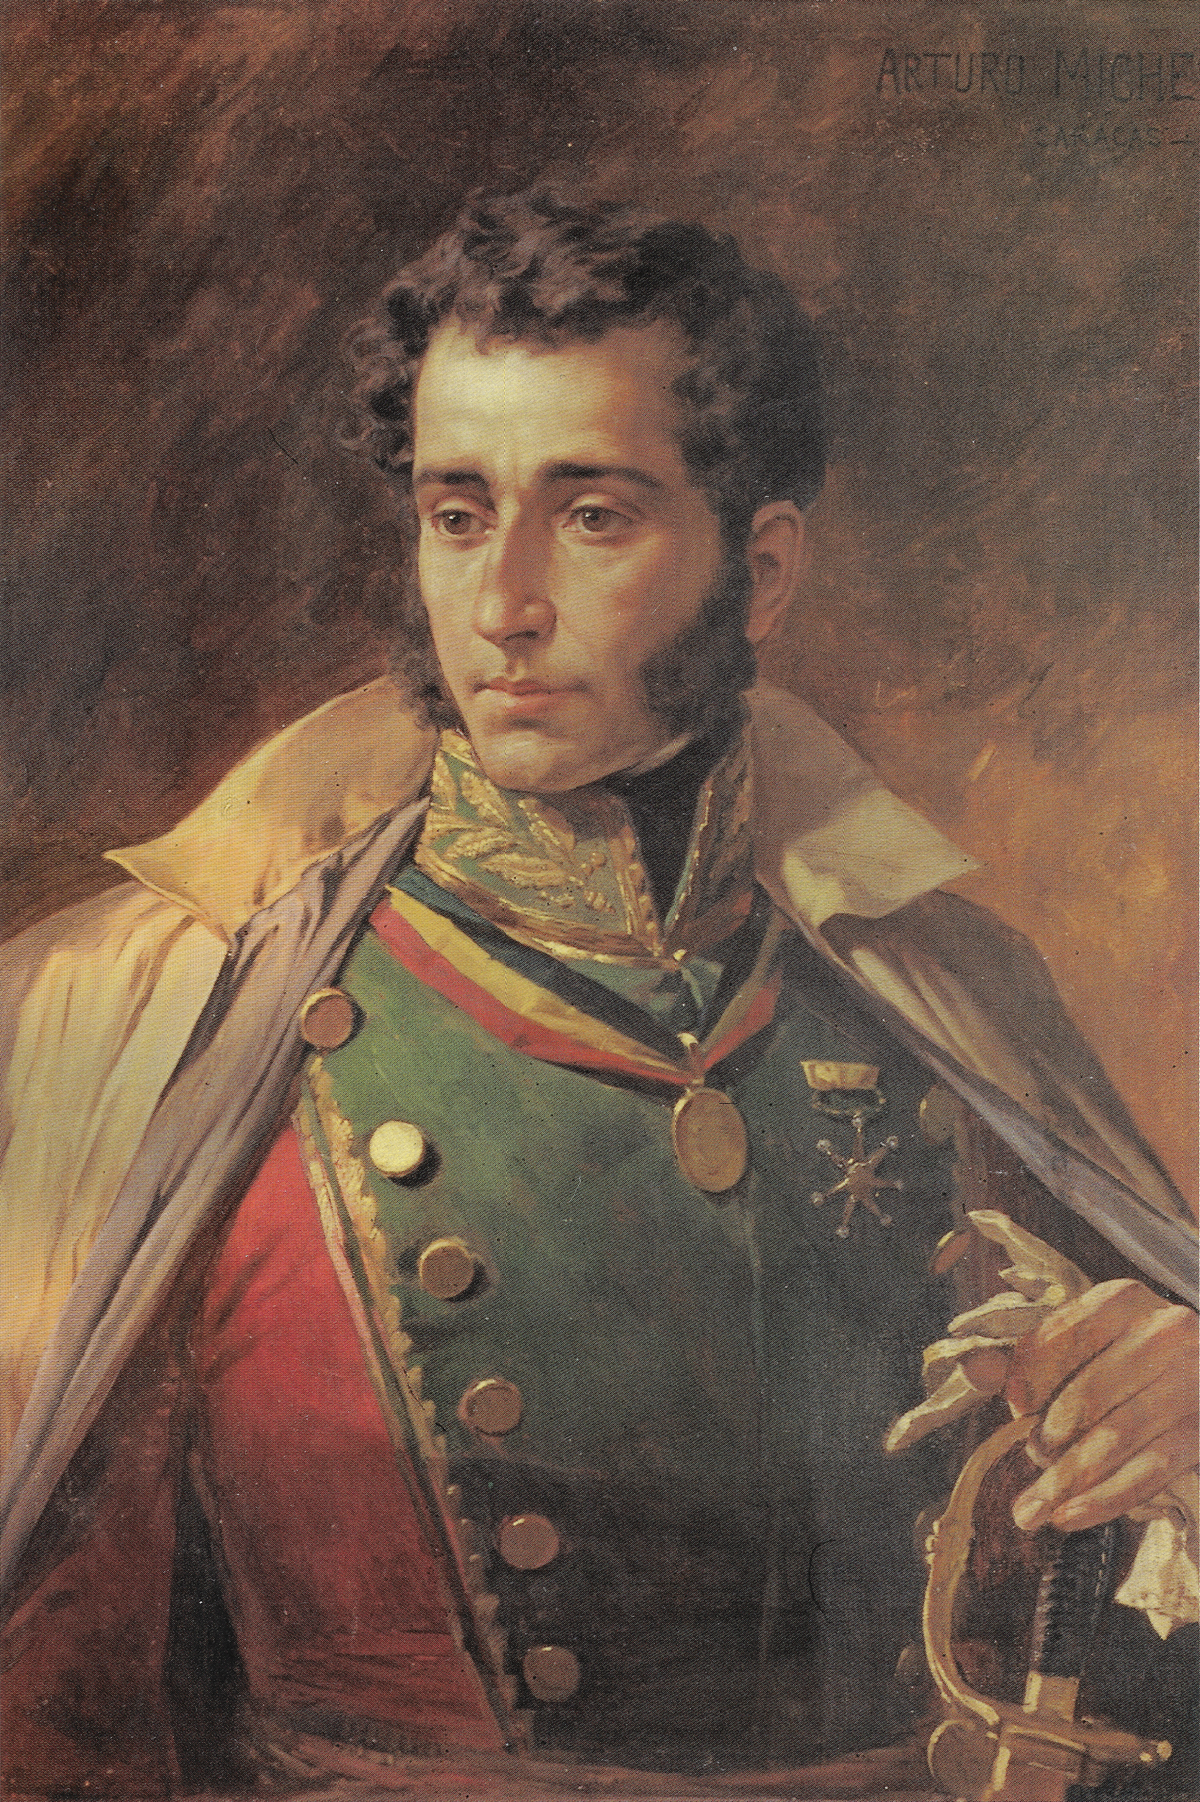 Antonio José de Sucre - Wikipedia